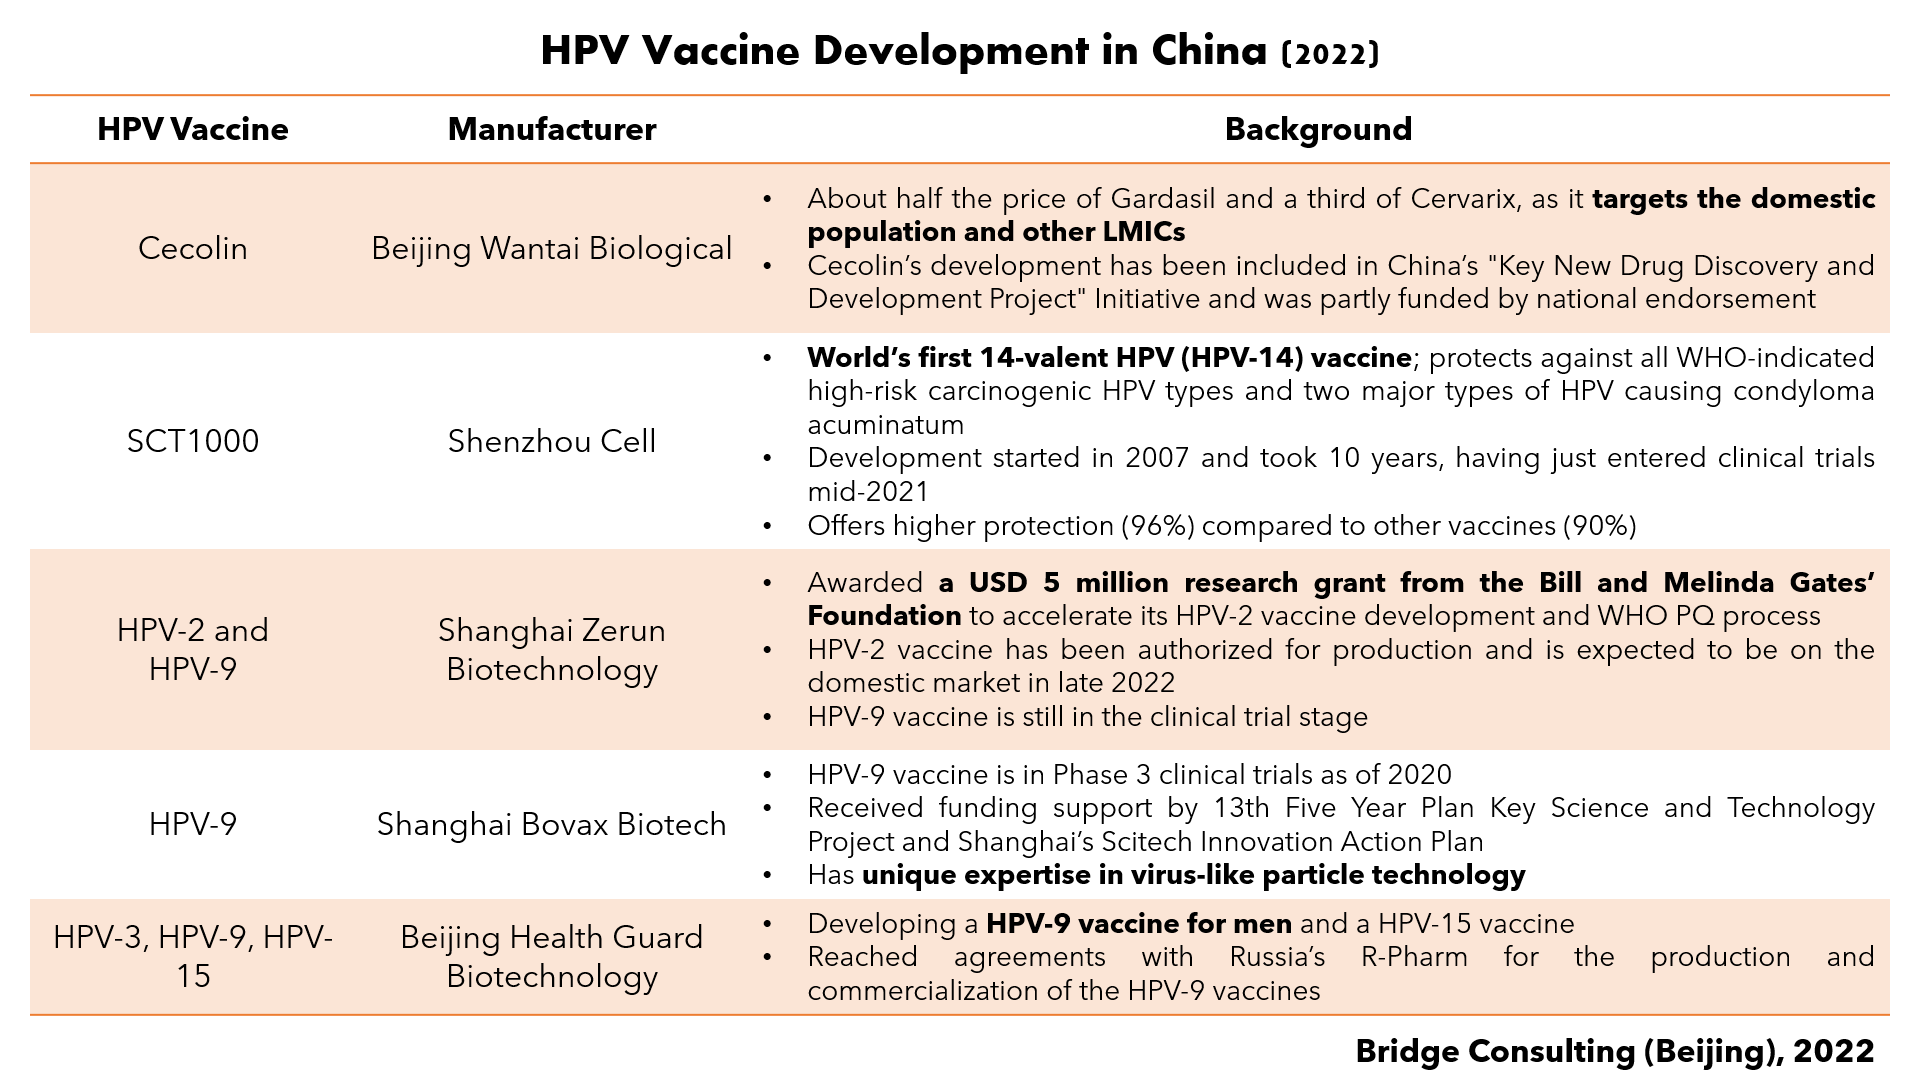 bridgebeijing_HPVdevelopmentinChina